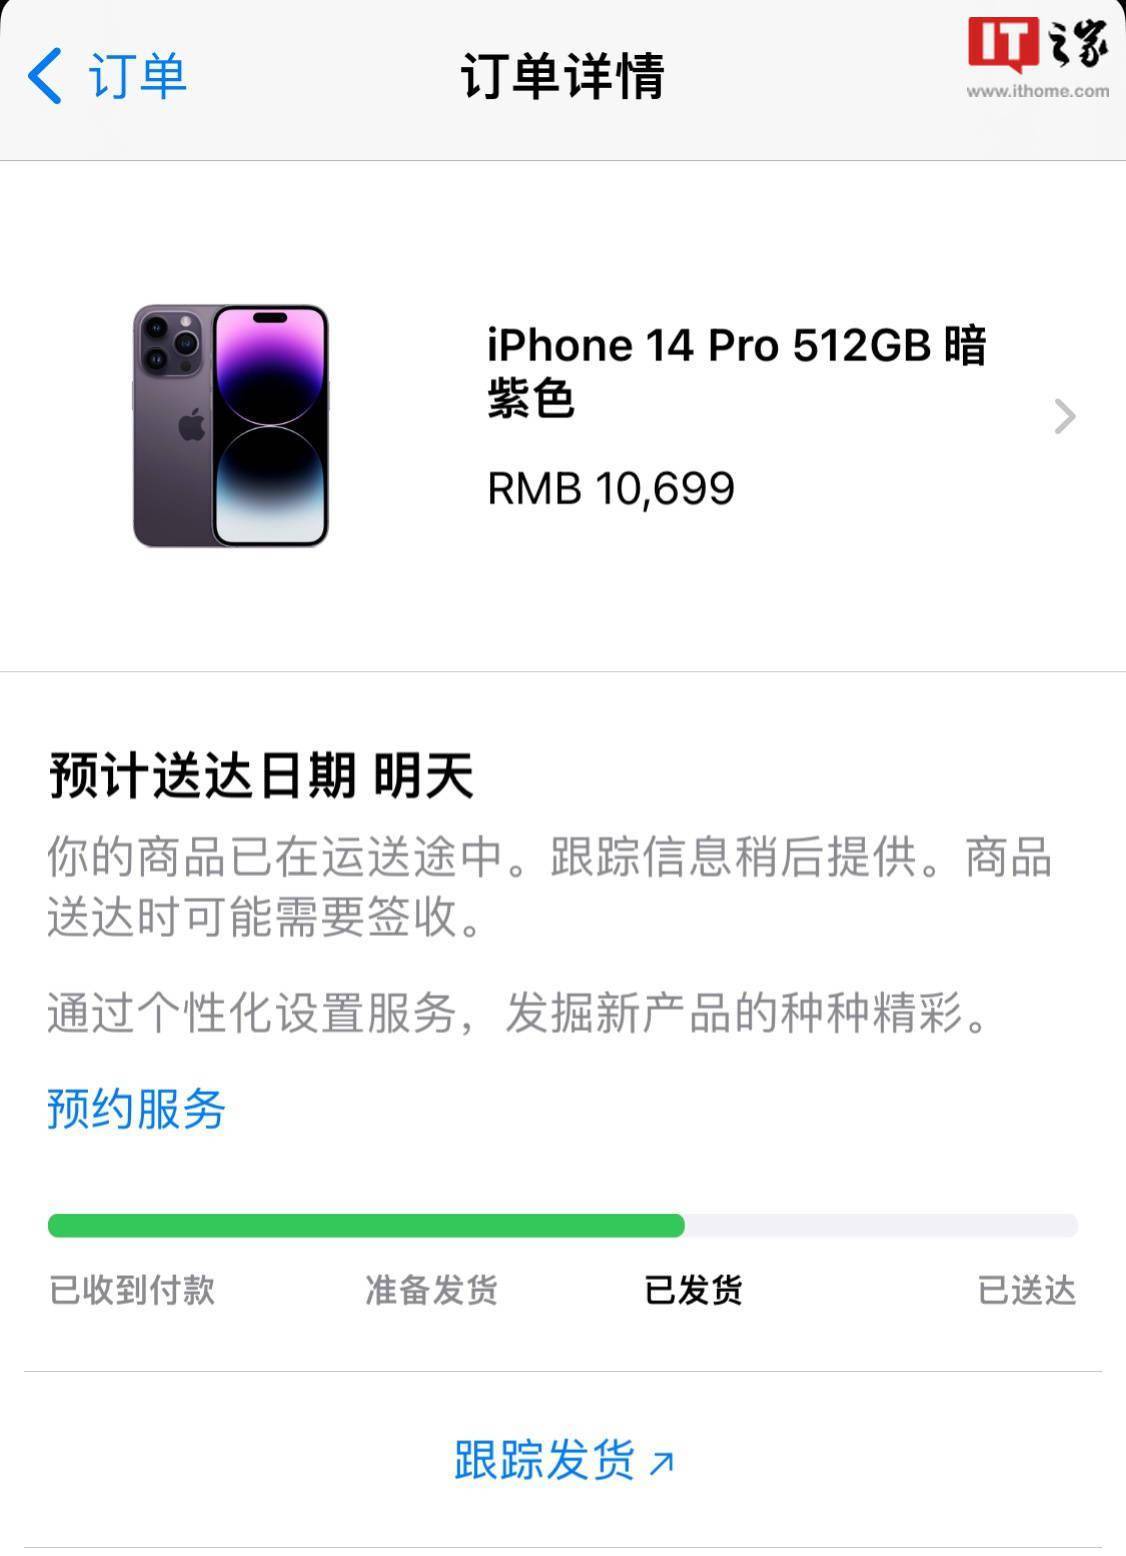 苹果 iPhone 14/14 Pro / 14 Pro Max 国内首批订单已发货插图